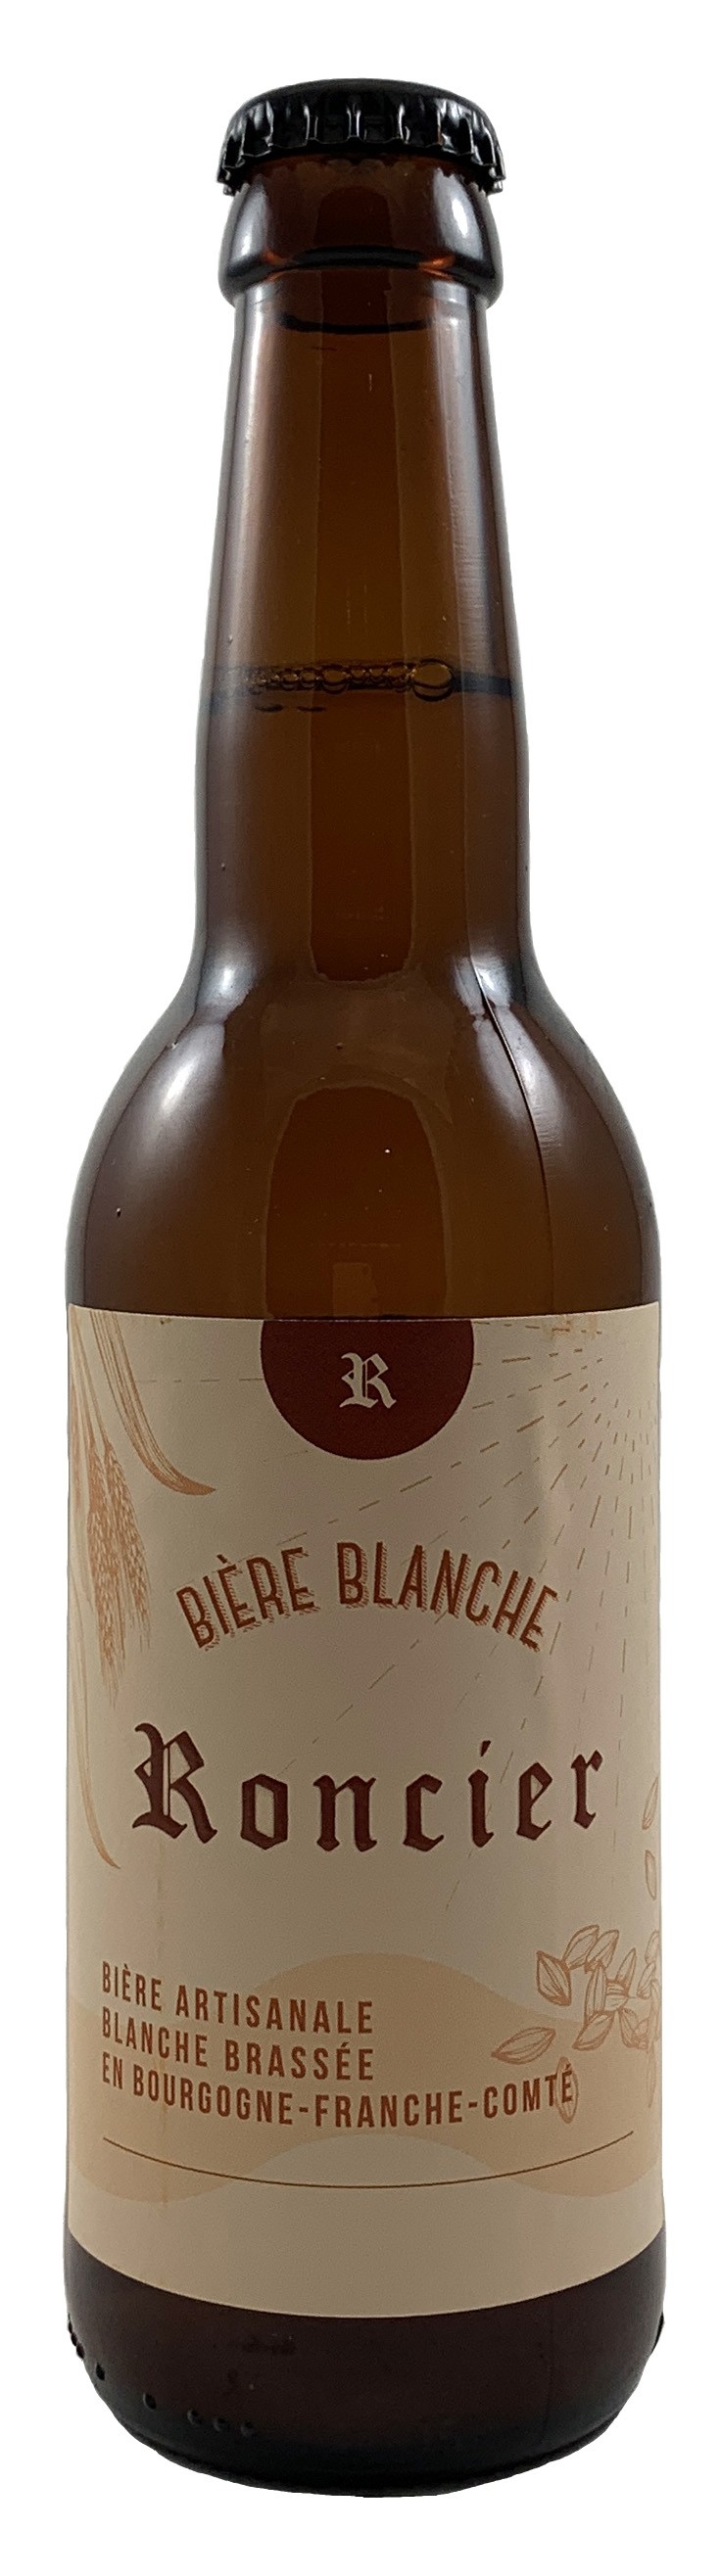 法國 勃艮地 鉈尼酒莊 羅希爾精釀白啤酒